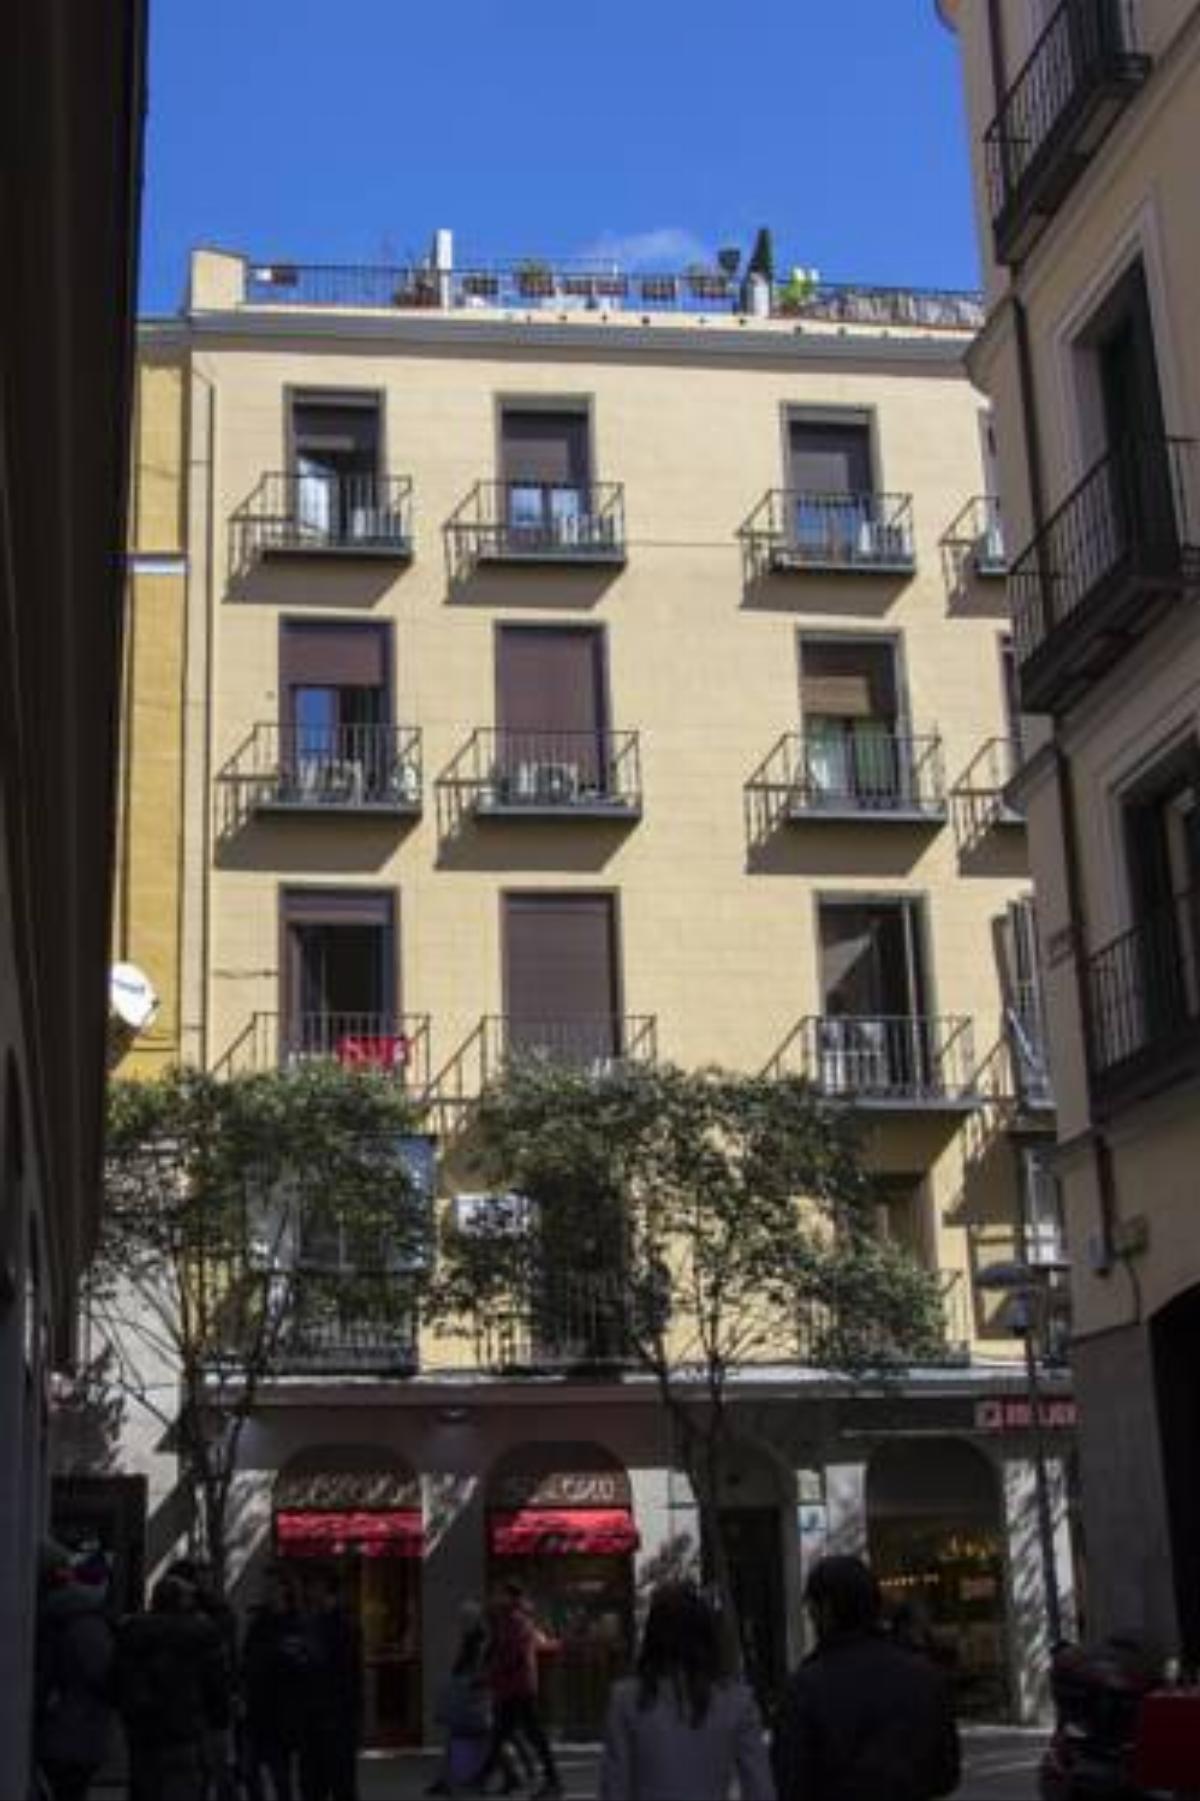 Hs Avarooms Hotel Madrid Spain